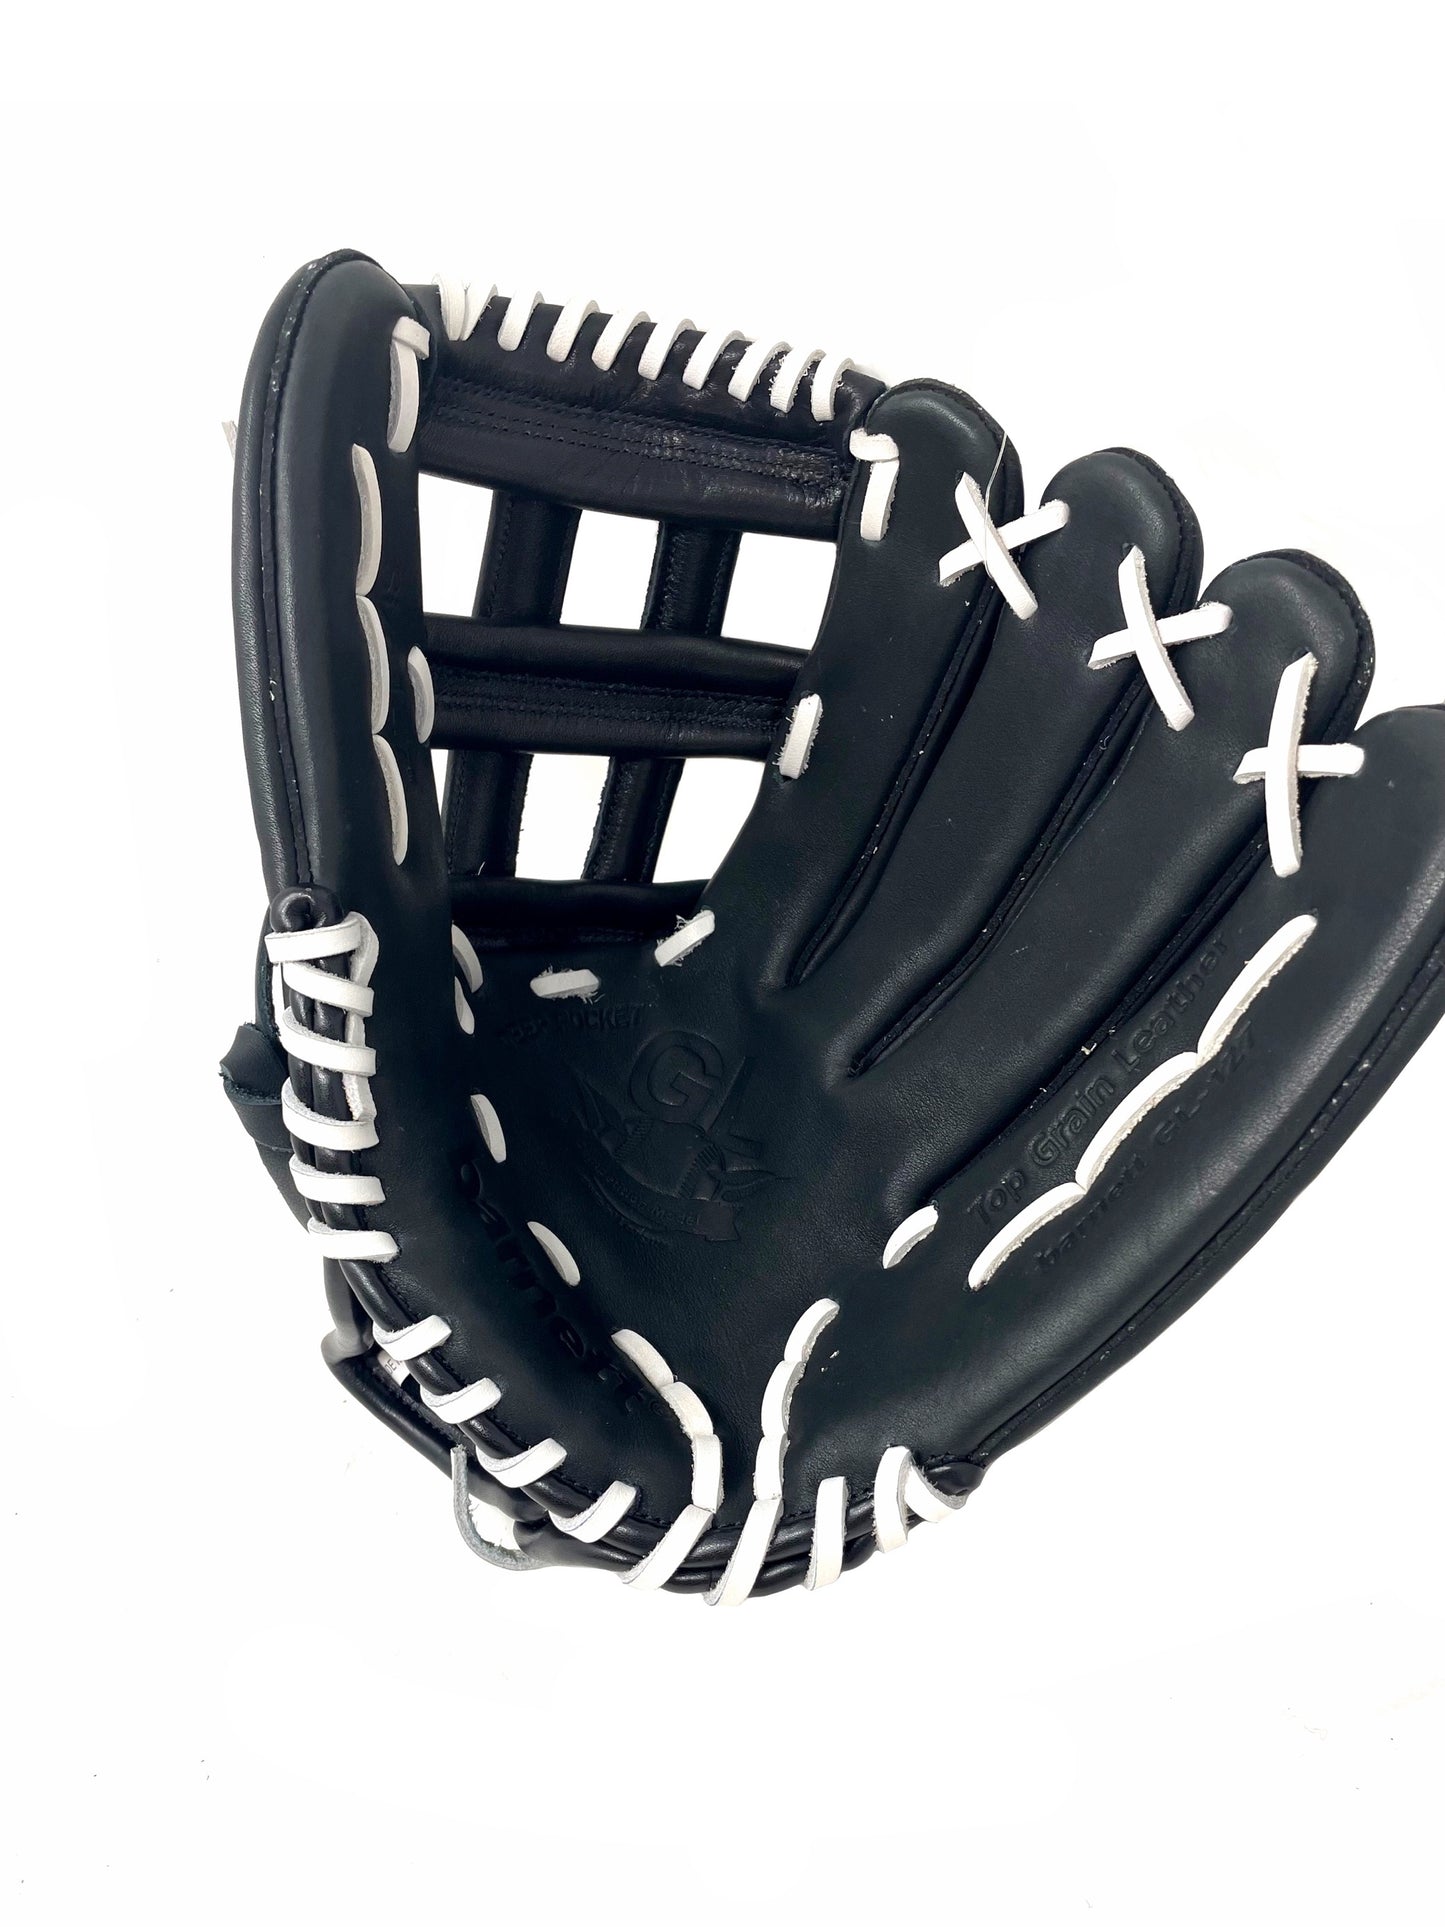 GL-127 Baseballová rukavice Competition, kůže 12.5, černá